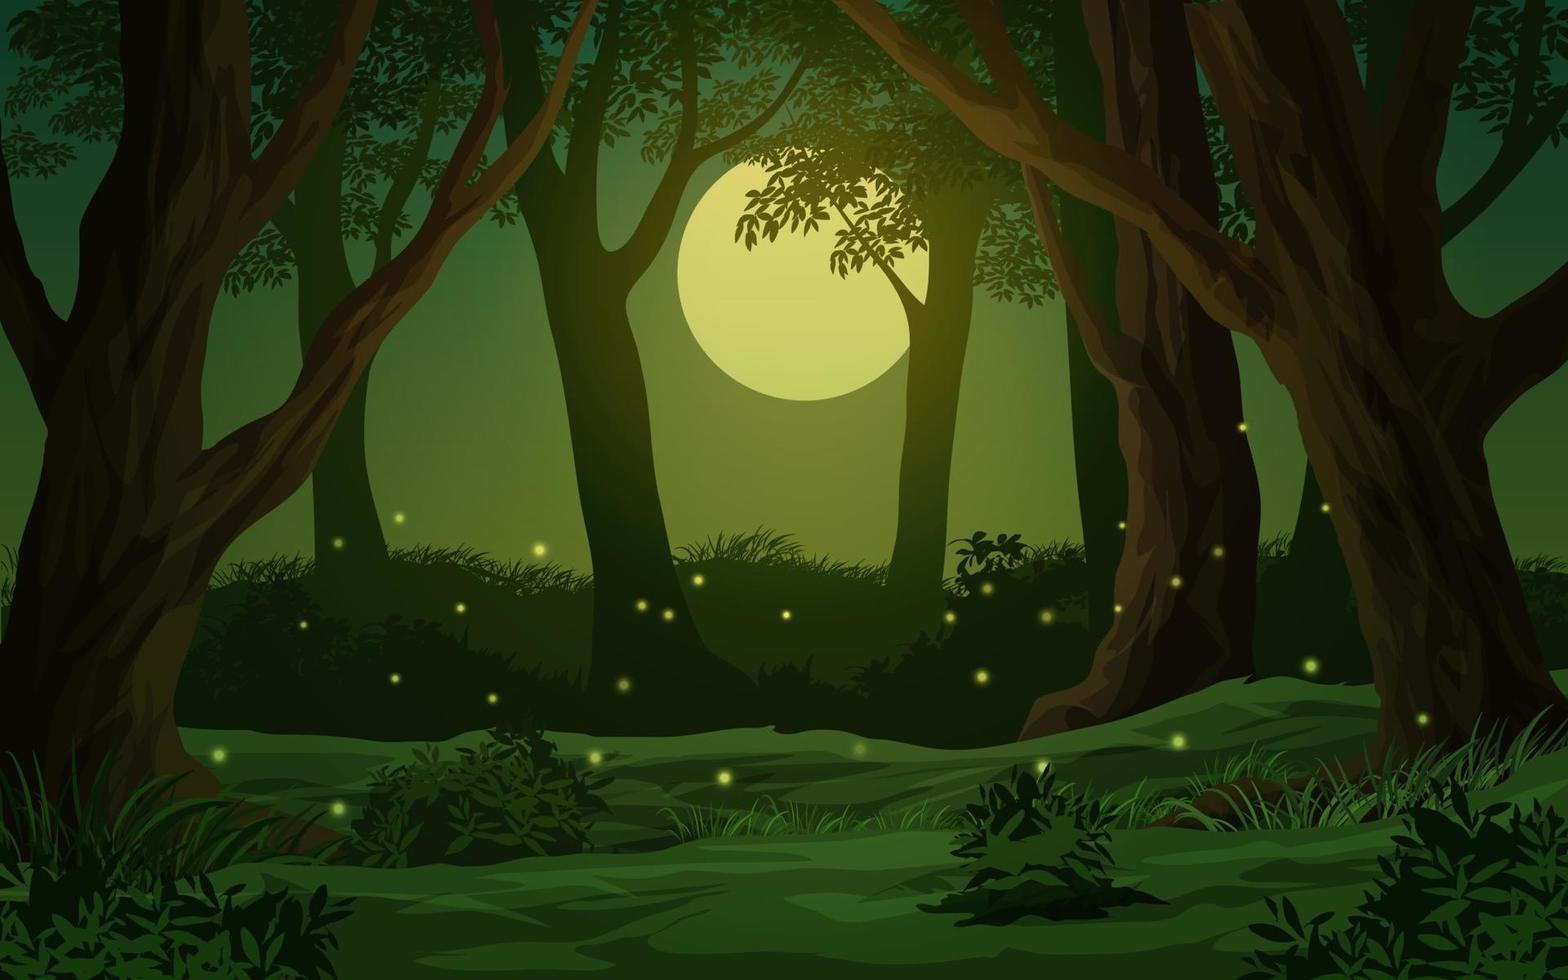 Forest Moonlight Night Illustration vector